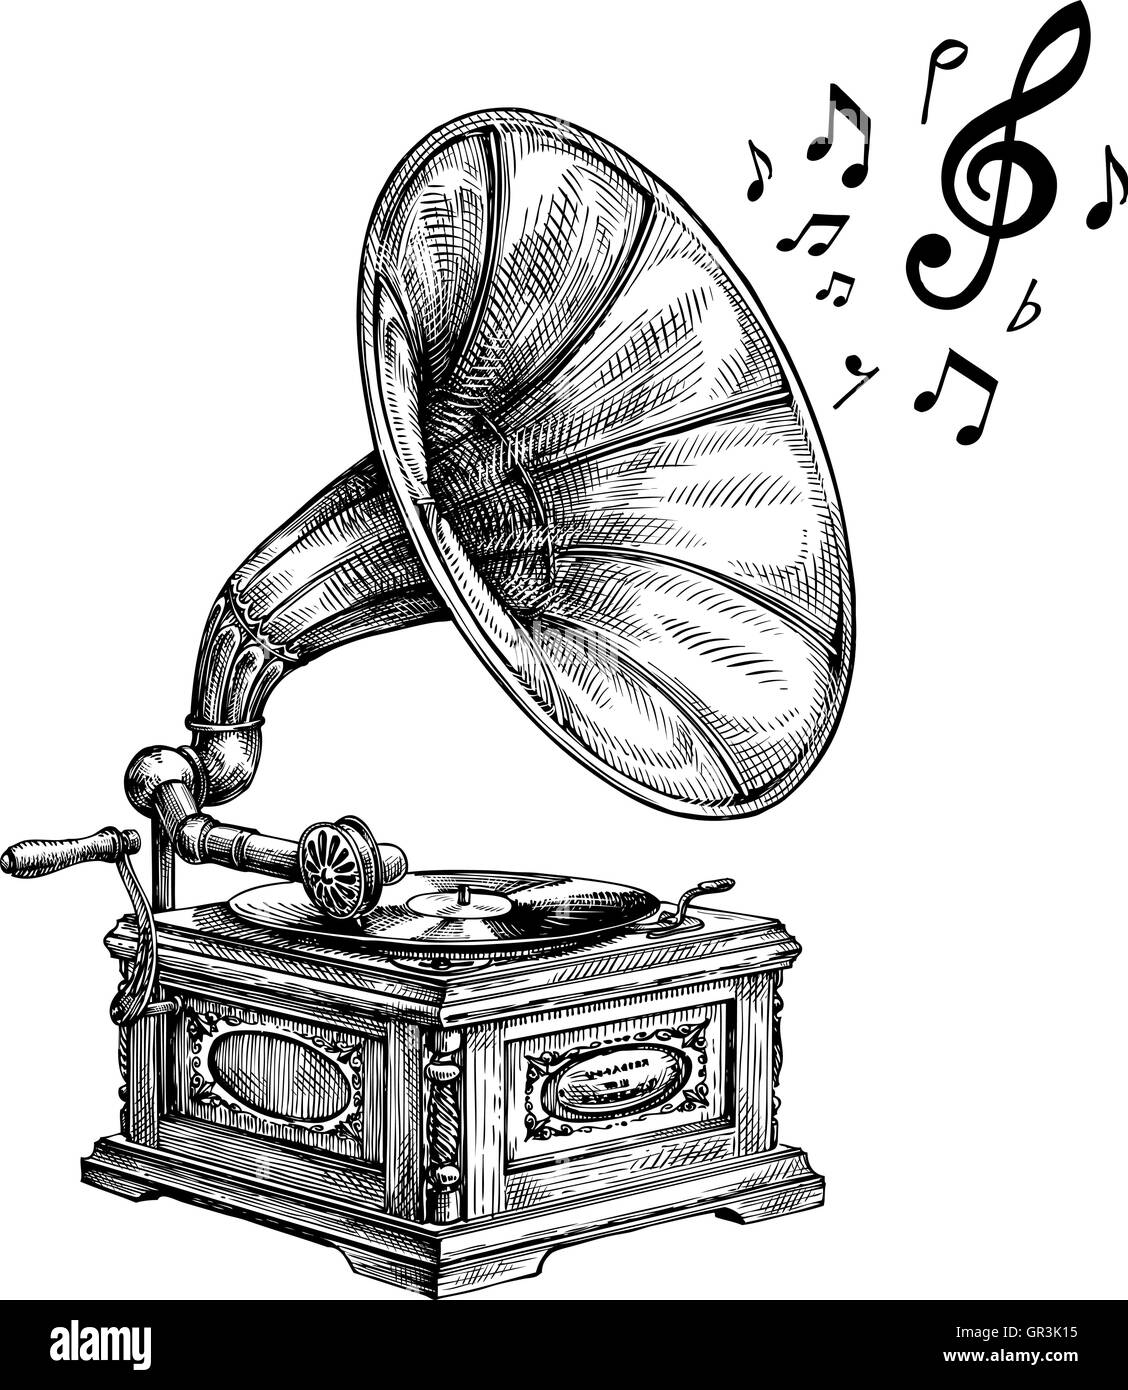 Disegnate a mano grammofono vintage con note musicali. Illustrazione Vettoriale Illustrazione Vettoriale